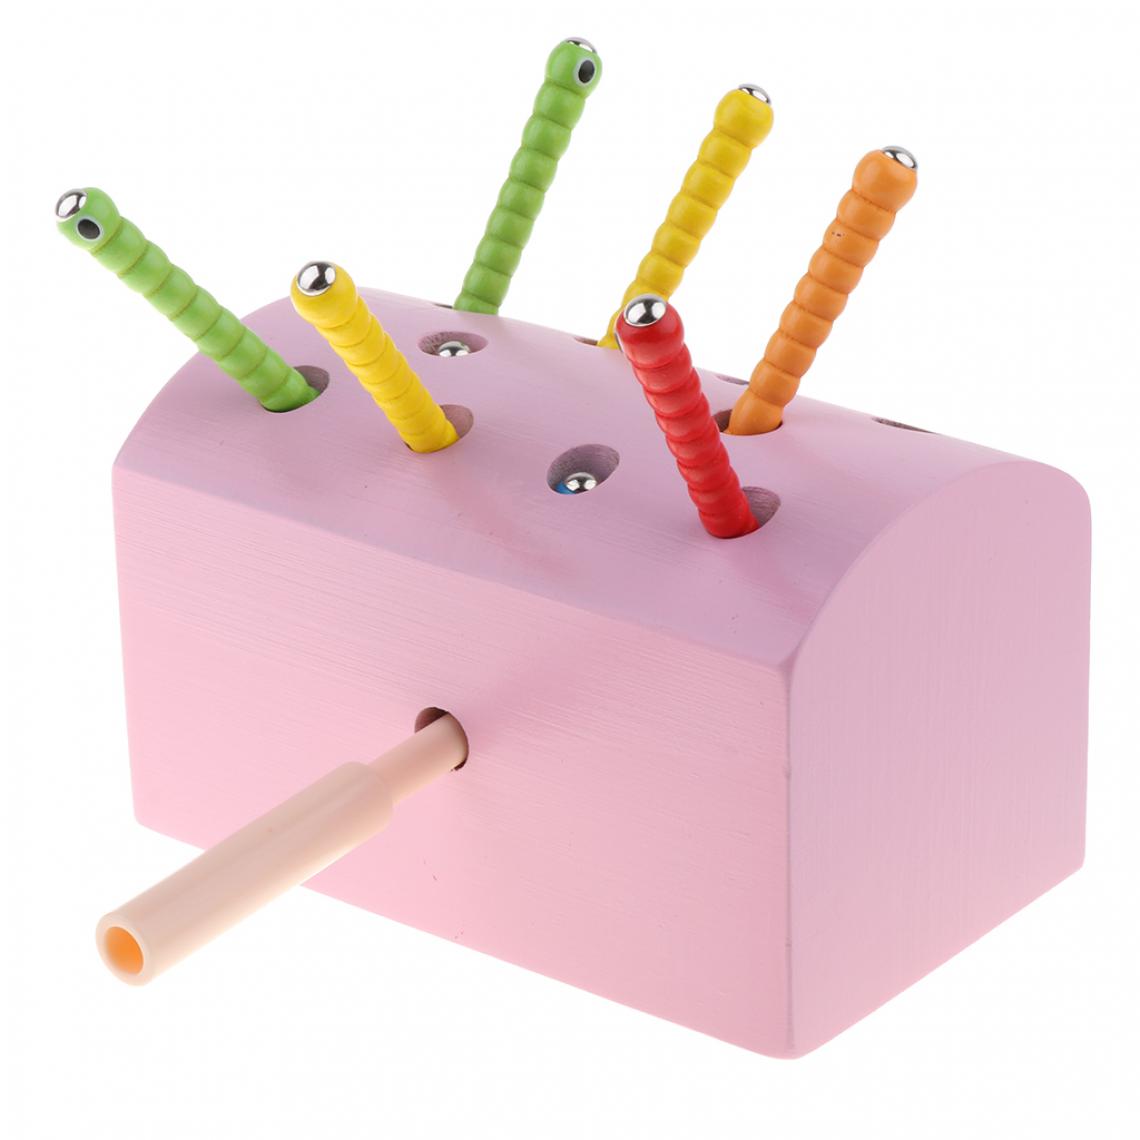 marque generique - bois magnétique capture insecte jeu jouets kid montessori jouet éducatif rose - Jeux d'éveil